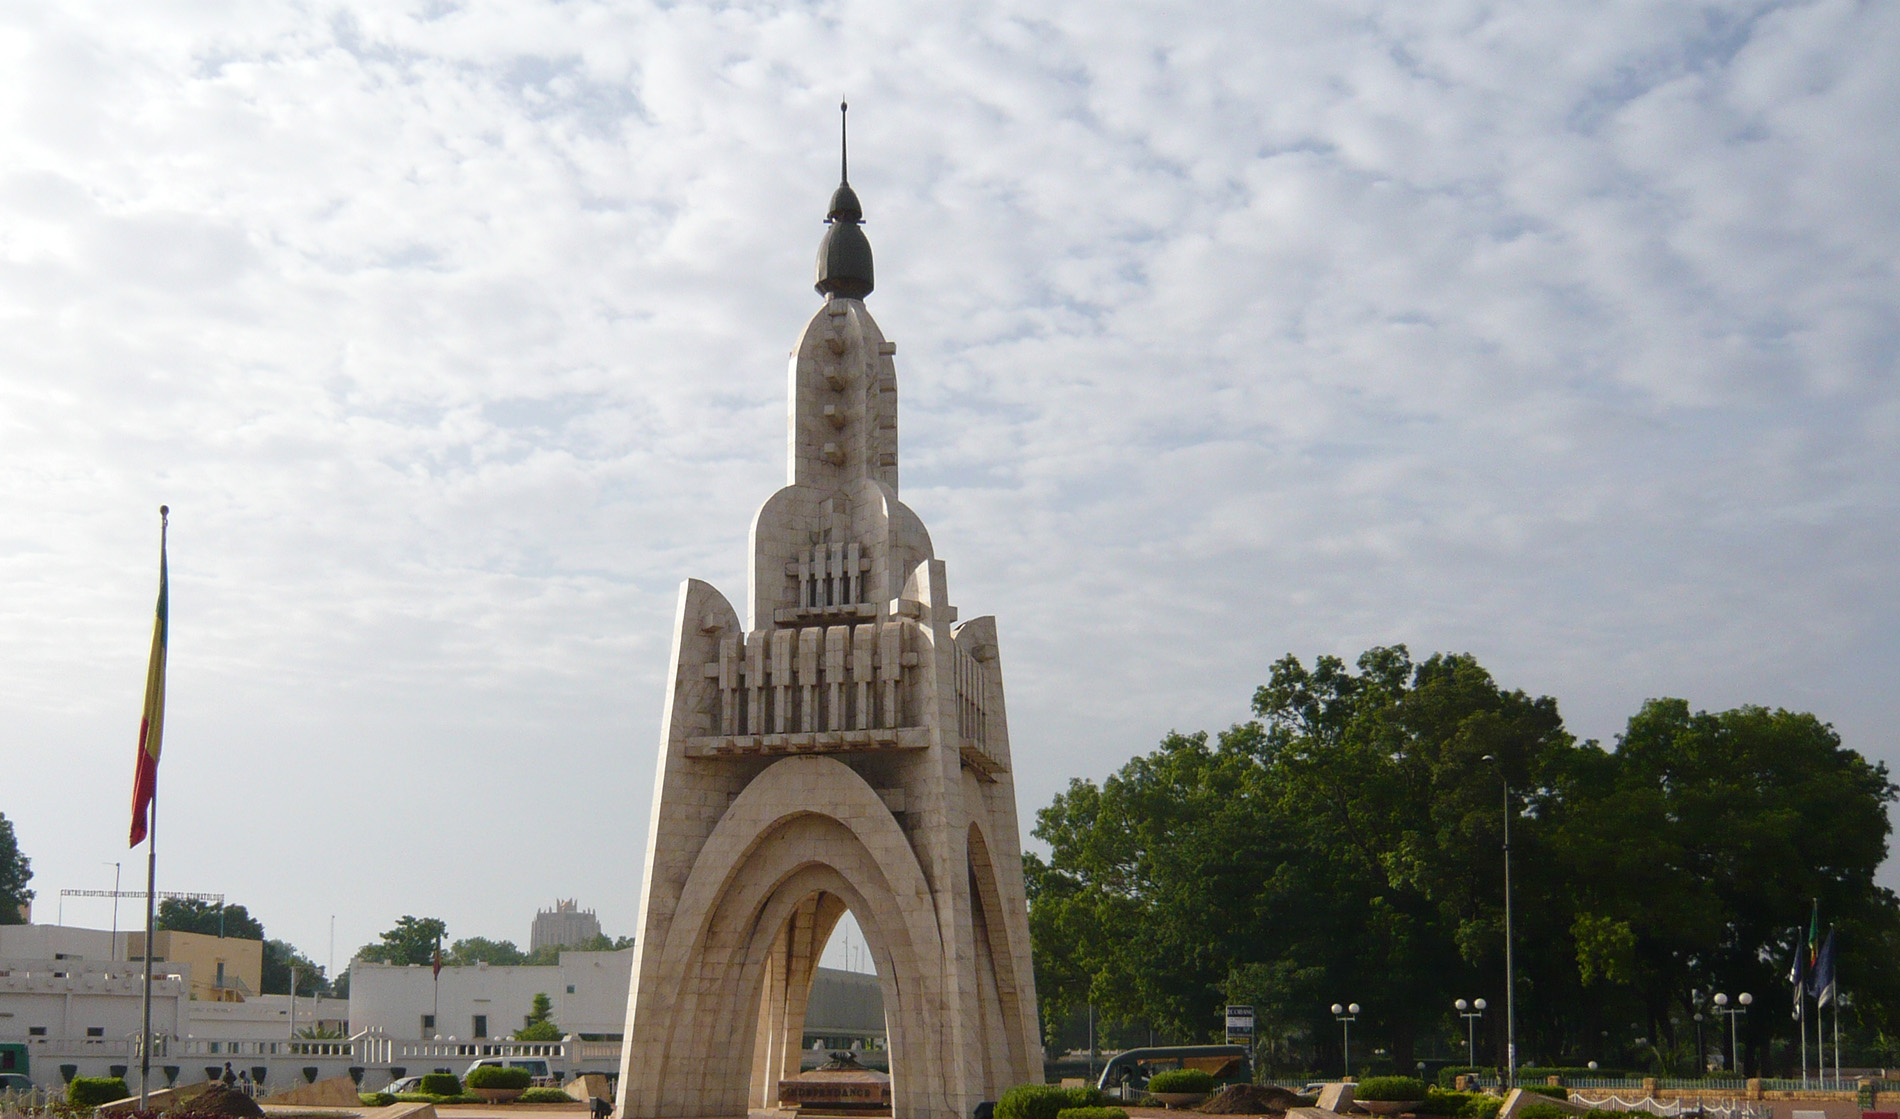 bamako mali tourist attractions